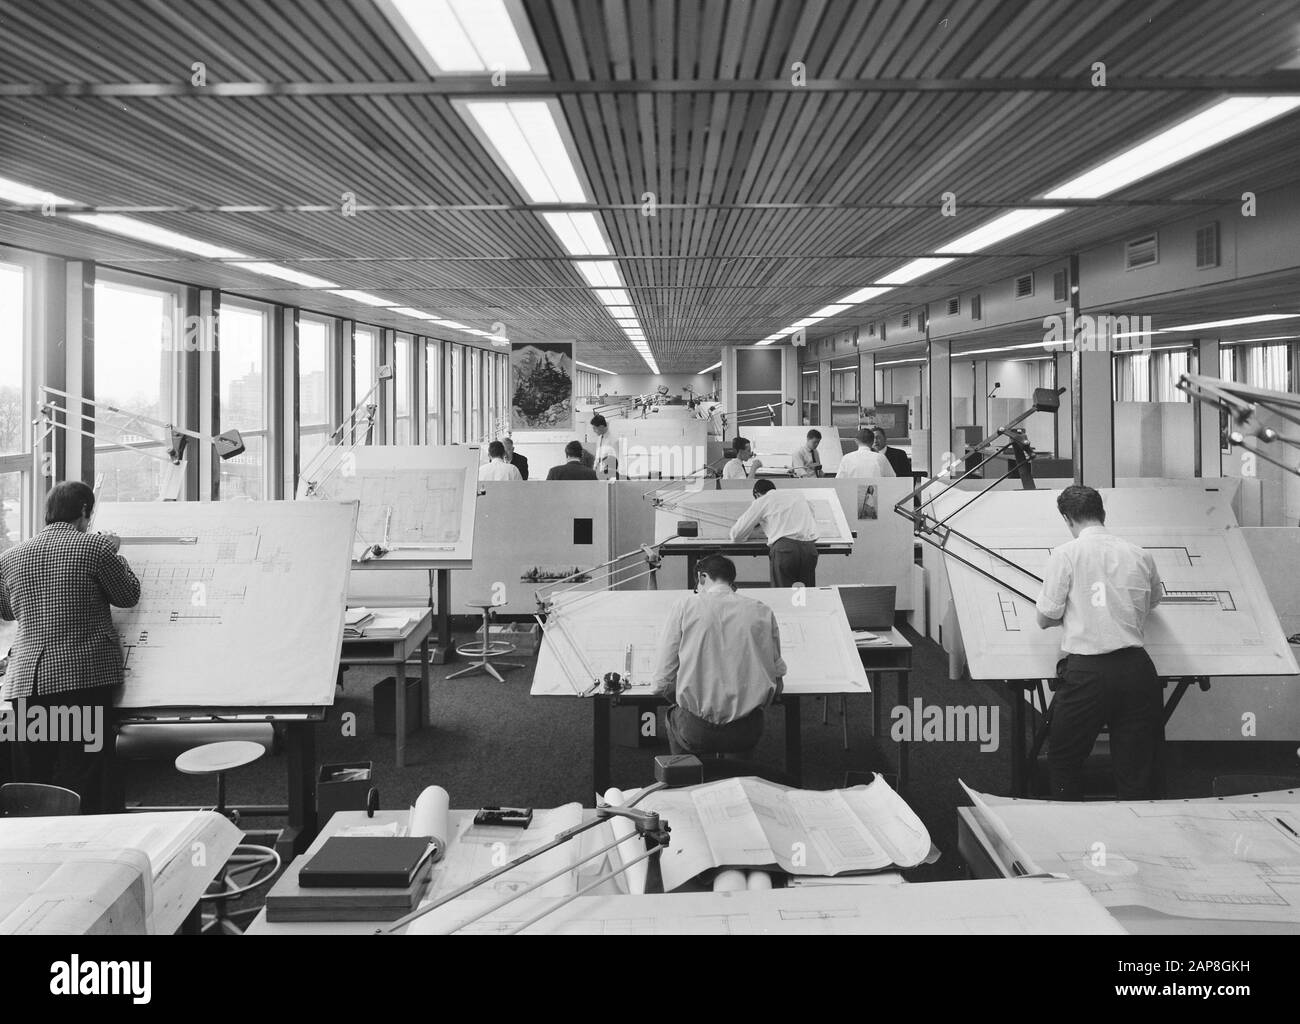 Architettura, sale da disegno Data: Marzo 1967 Parole Chiave: Architettura, sale da disegno Foto Stock